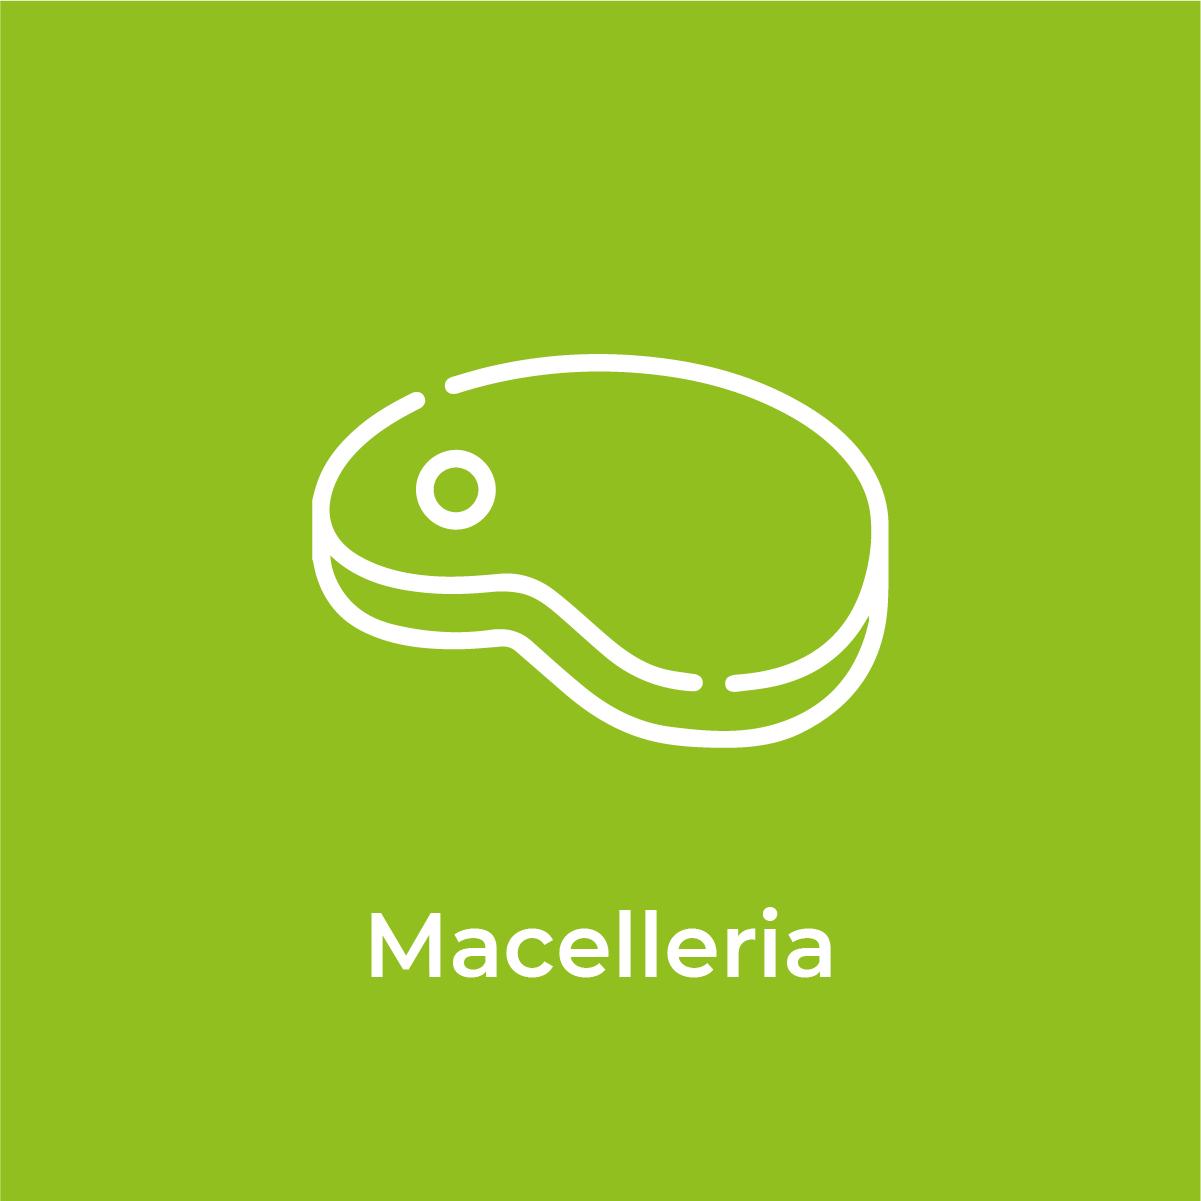 Macelleria